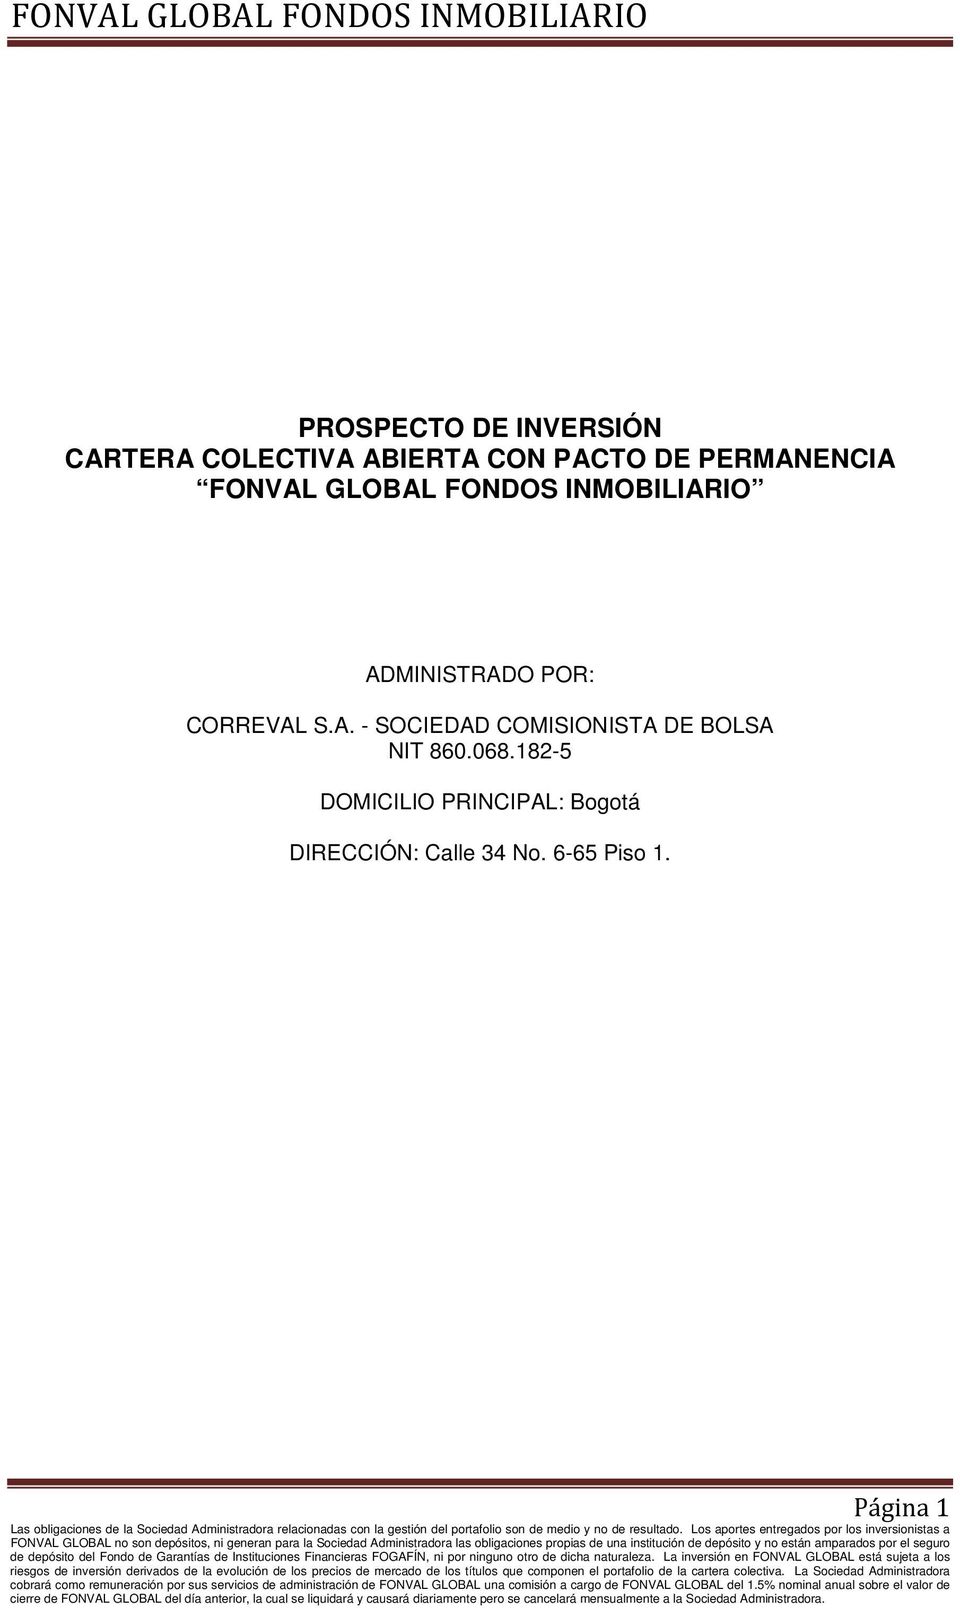 CORREVAL S.A. - SOCIEDAD COMISIONISTA DE BOLSA NIT 860.068.